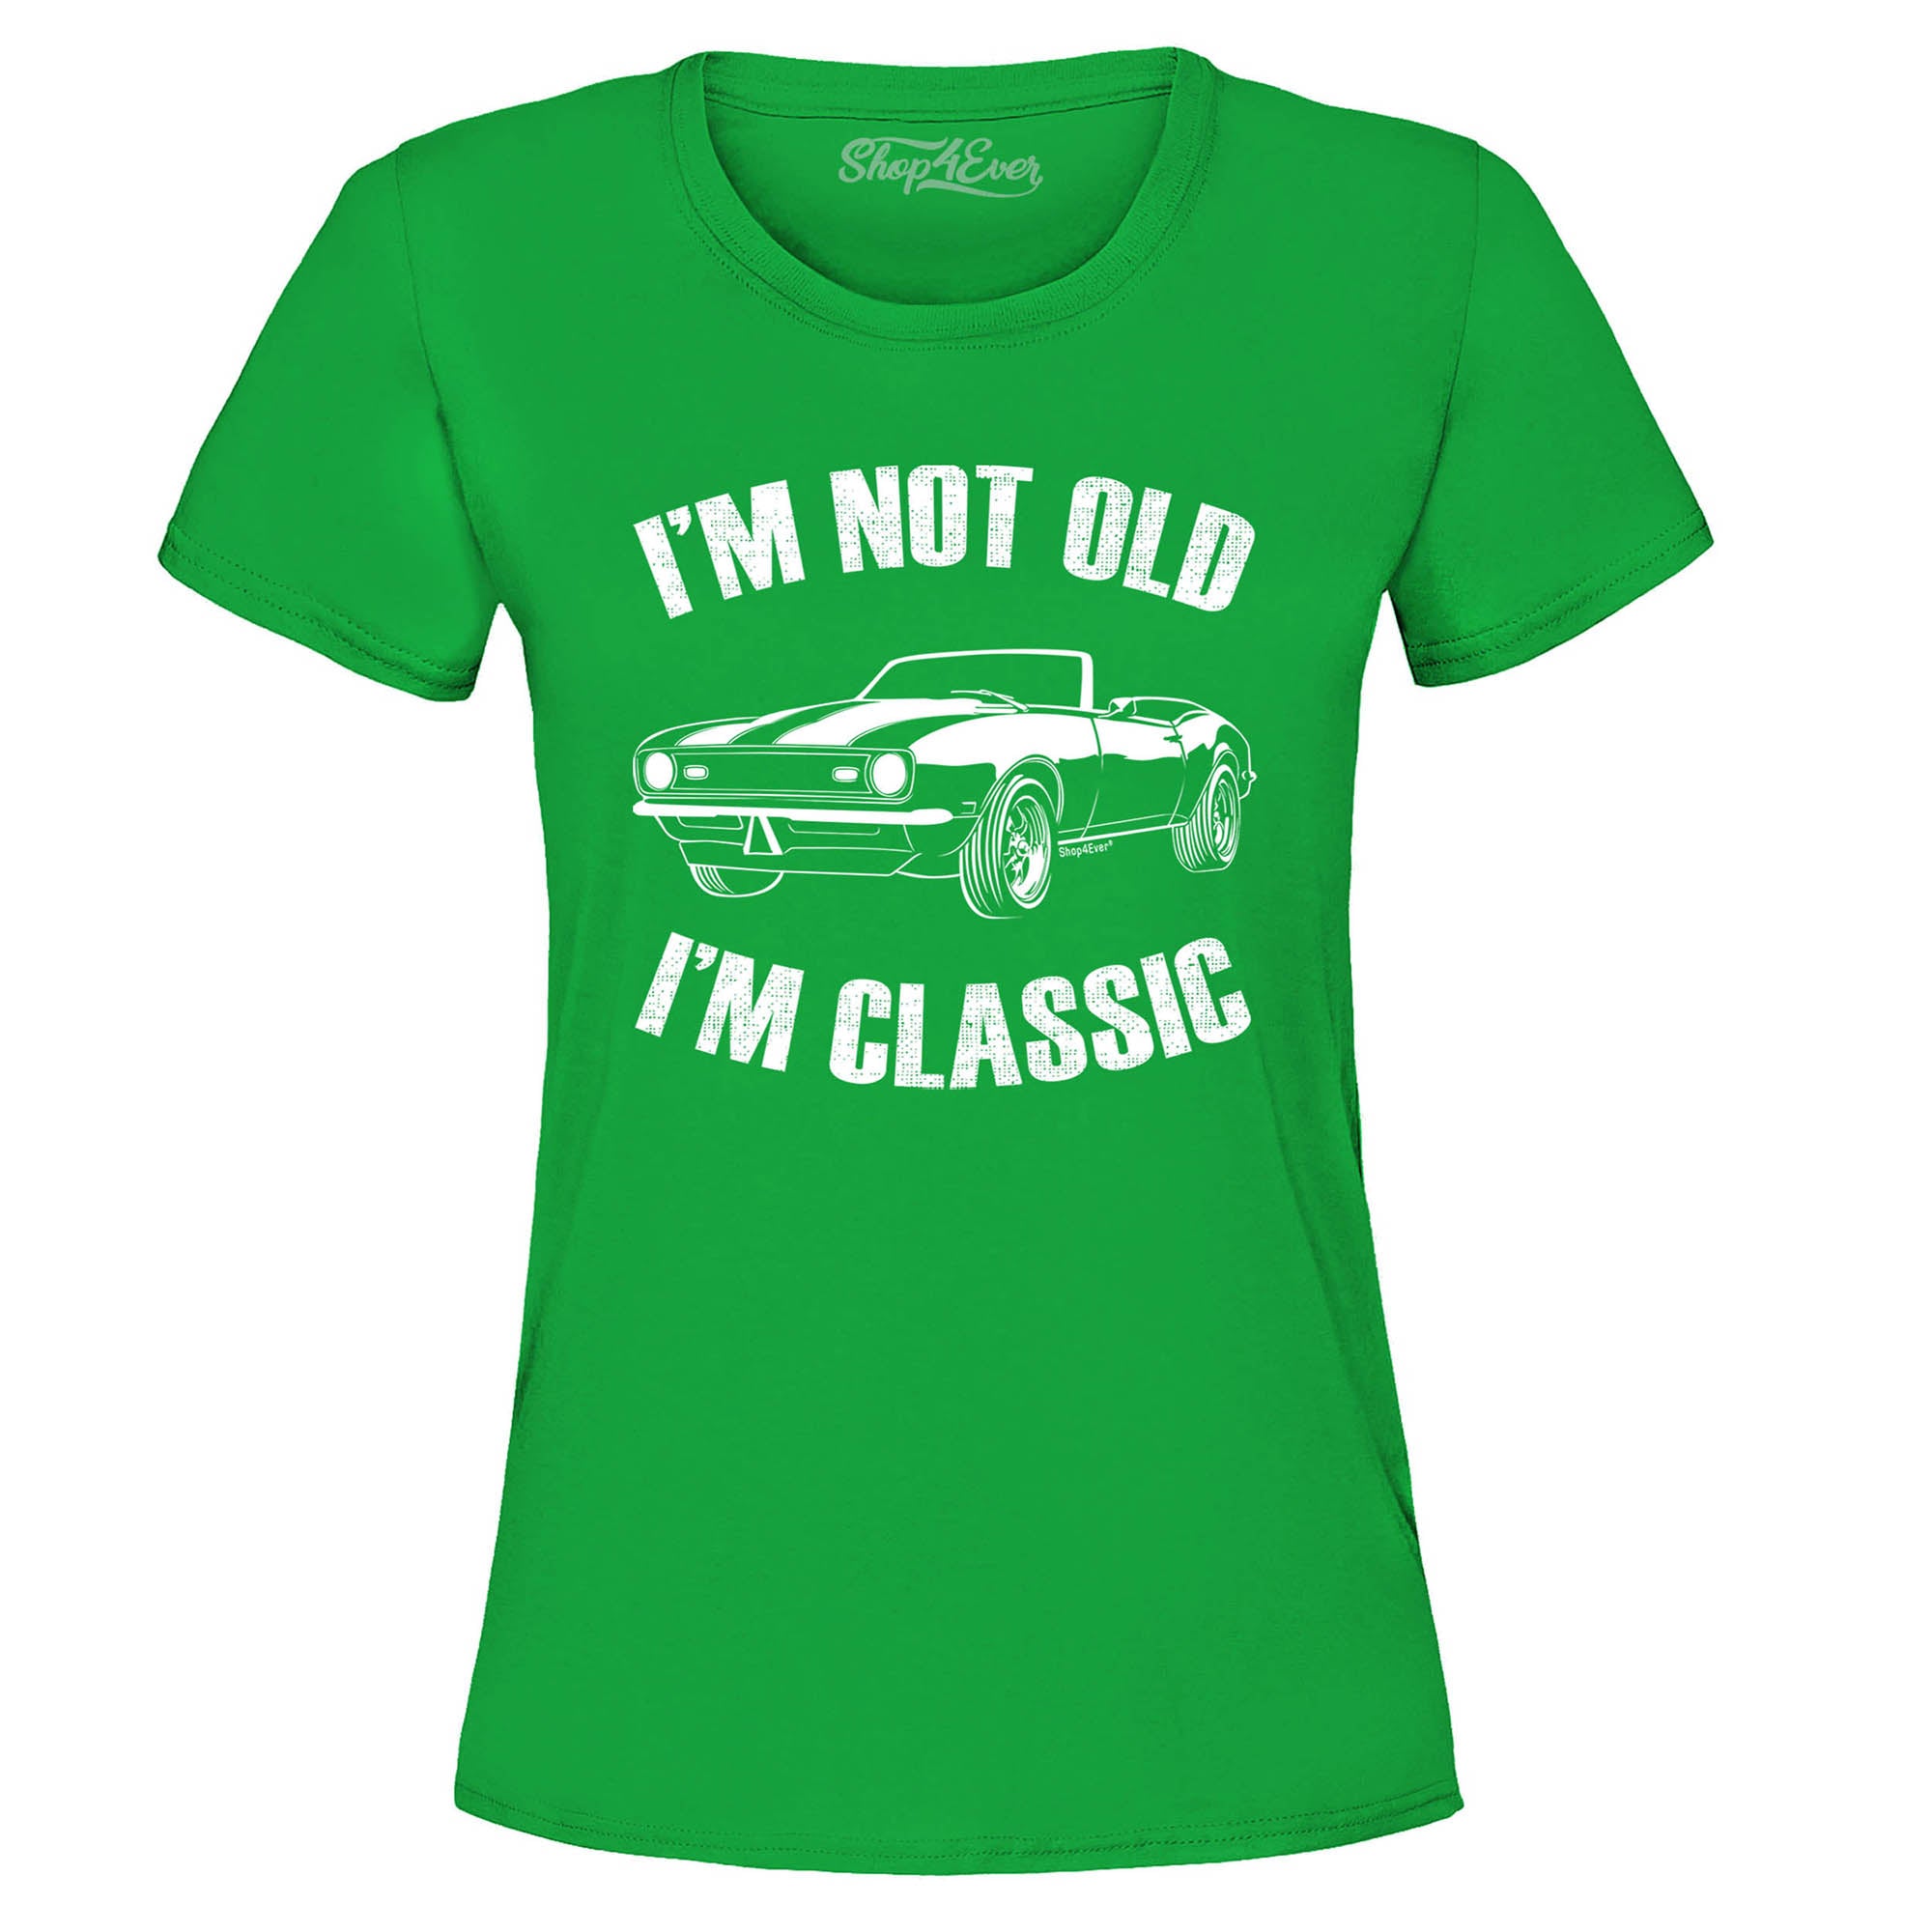 I'm Not Old I'm Classic Women's T-Shirt